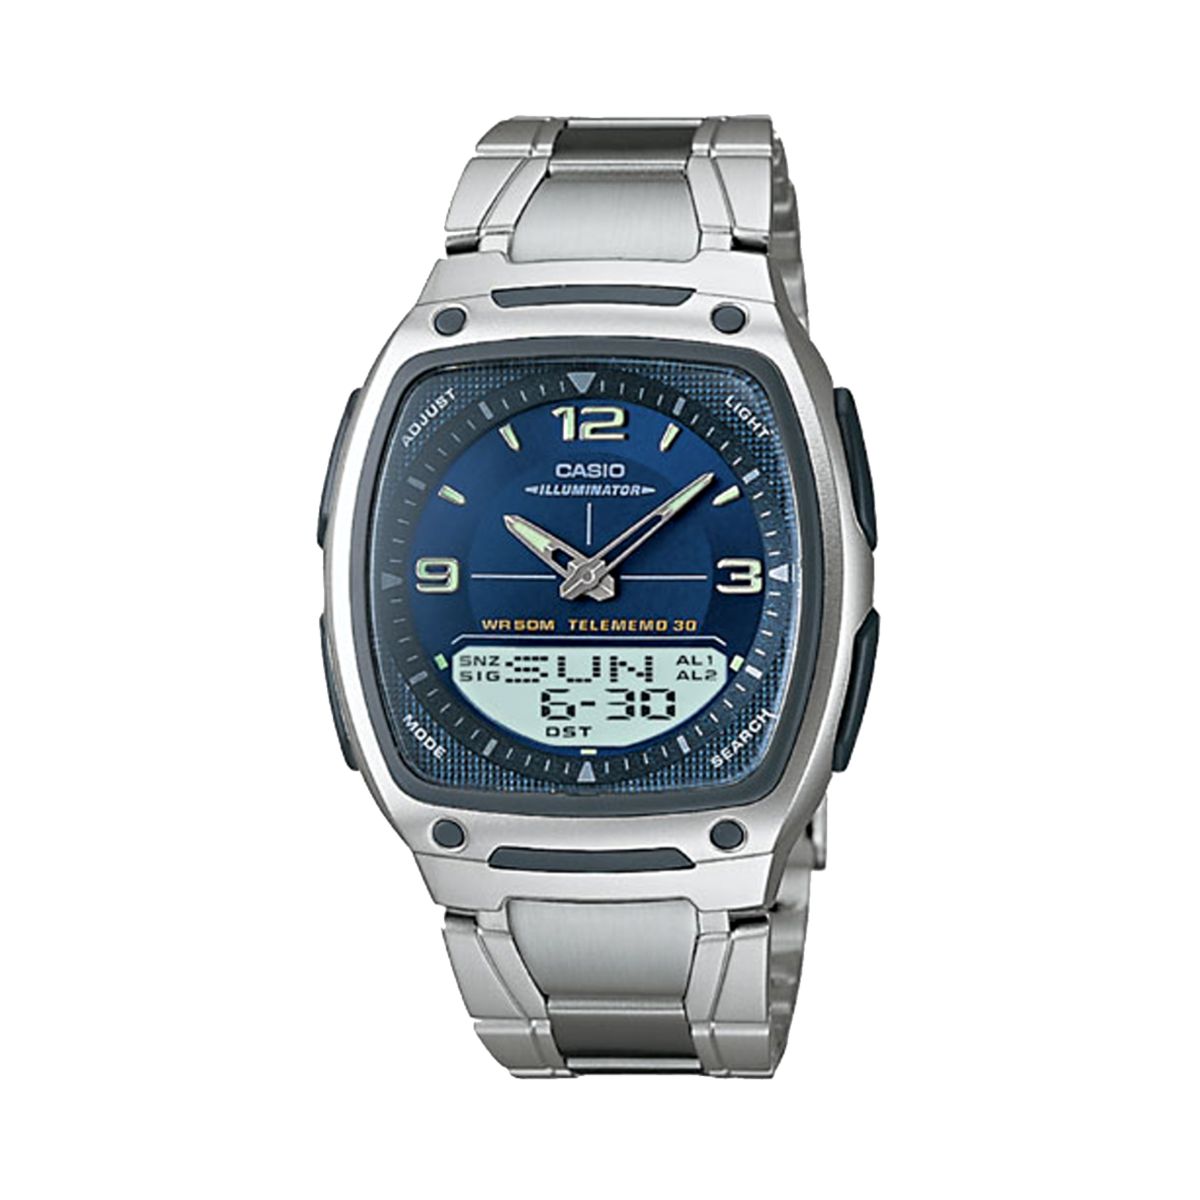 Мужские часы Casio Illuminator World Time с аналоговым и цифровым банком данных с хронографом - AW81D-2AV Casio